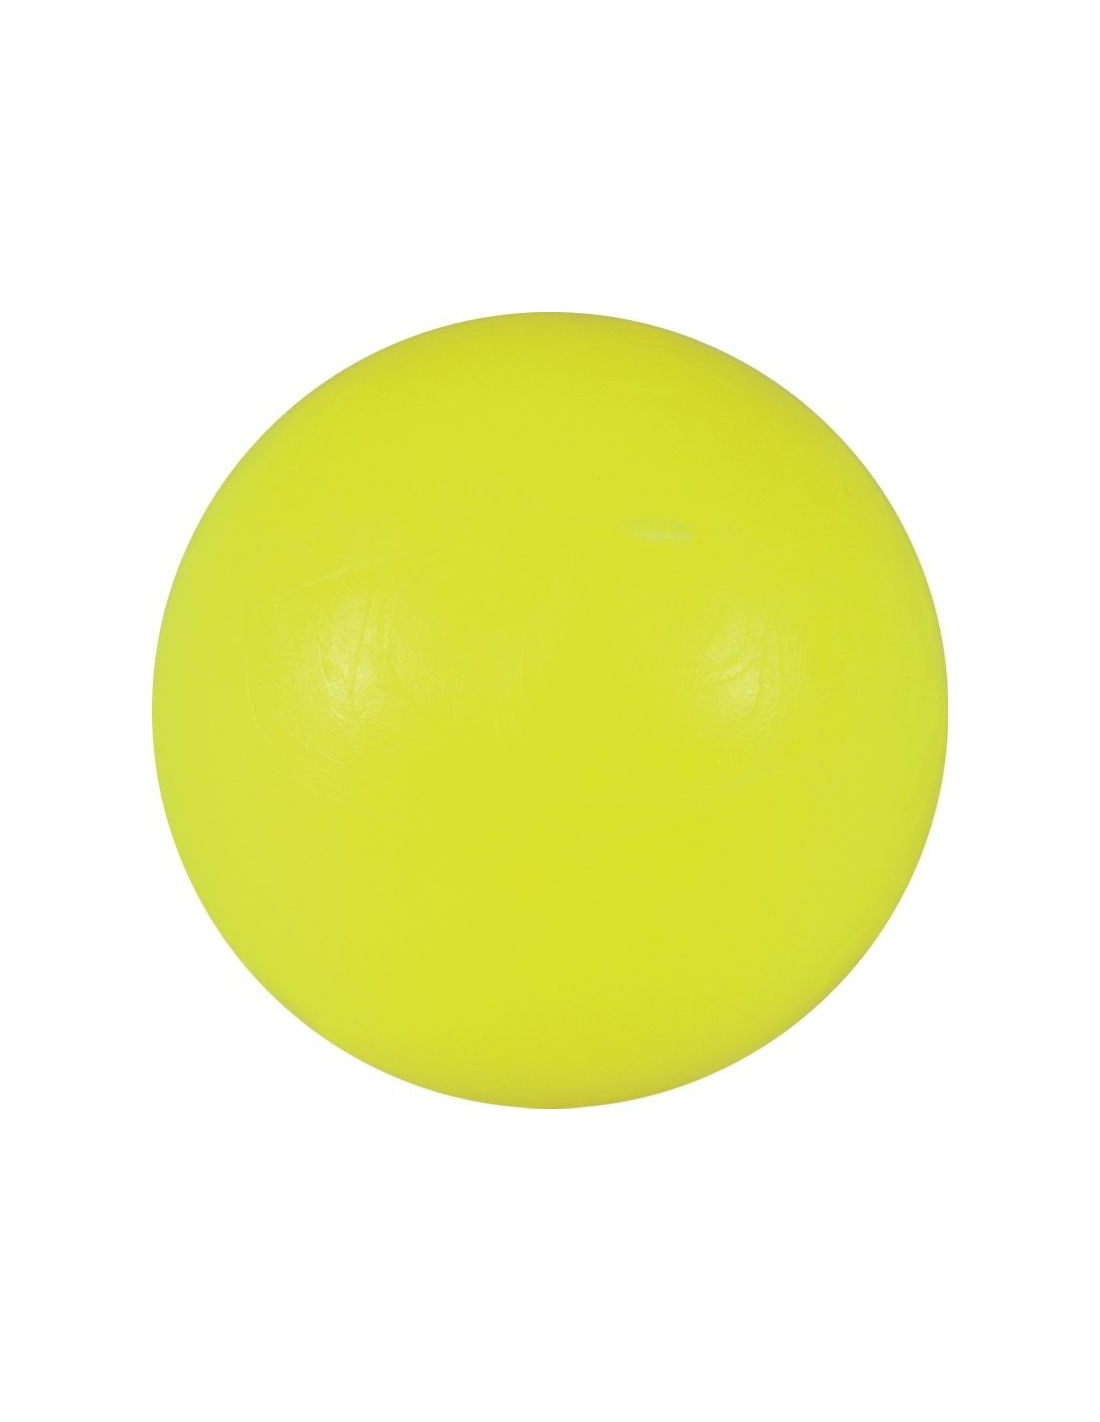 Kicker-Ball hart neon gelb glatt 